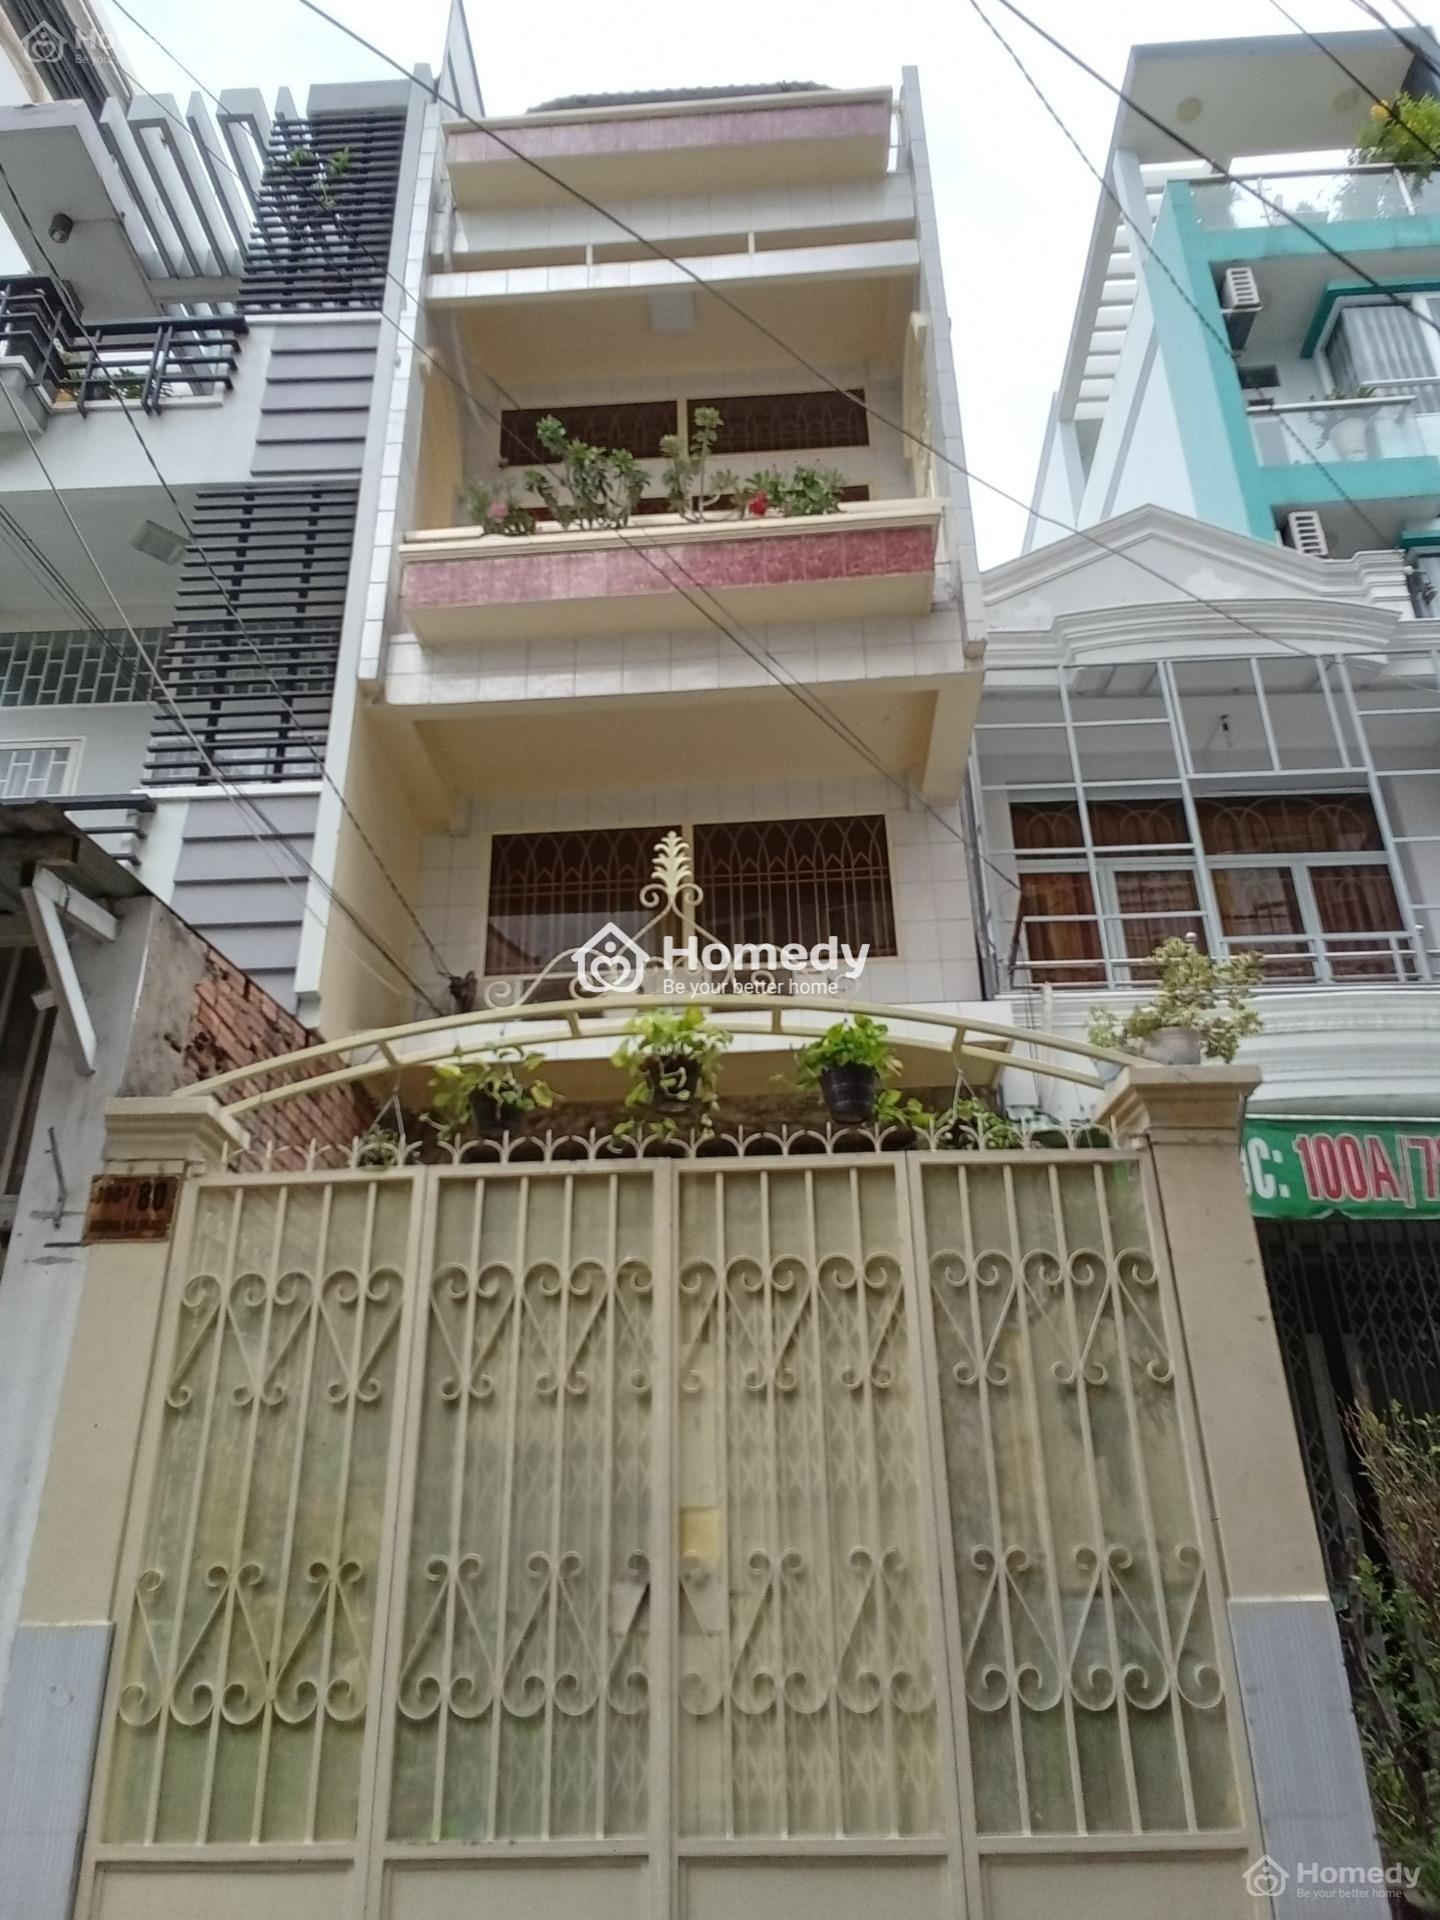 Hot, bán nhà Hồ Chí Minh quận 8 giá siêu rẻ, sổ hồng riêng, chính chủ cần bán nhà gấp đi nước ngoài - Ảnh 1